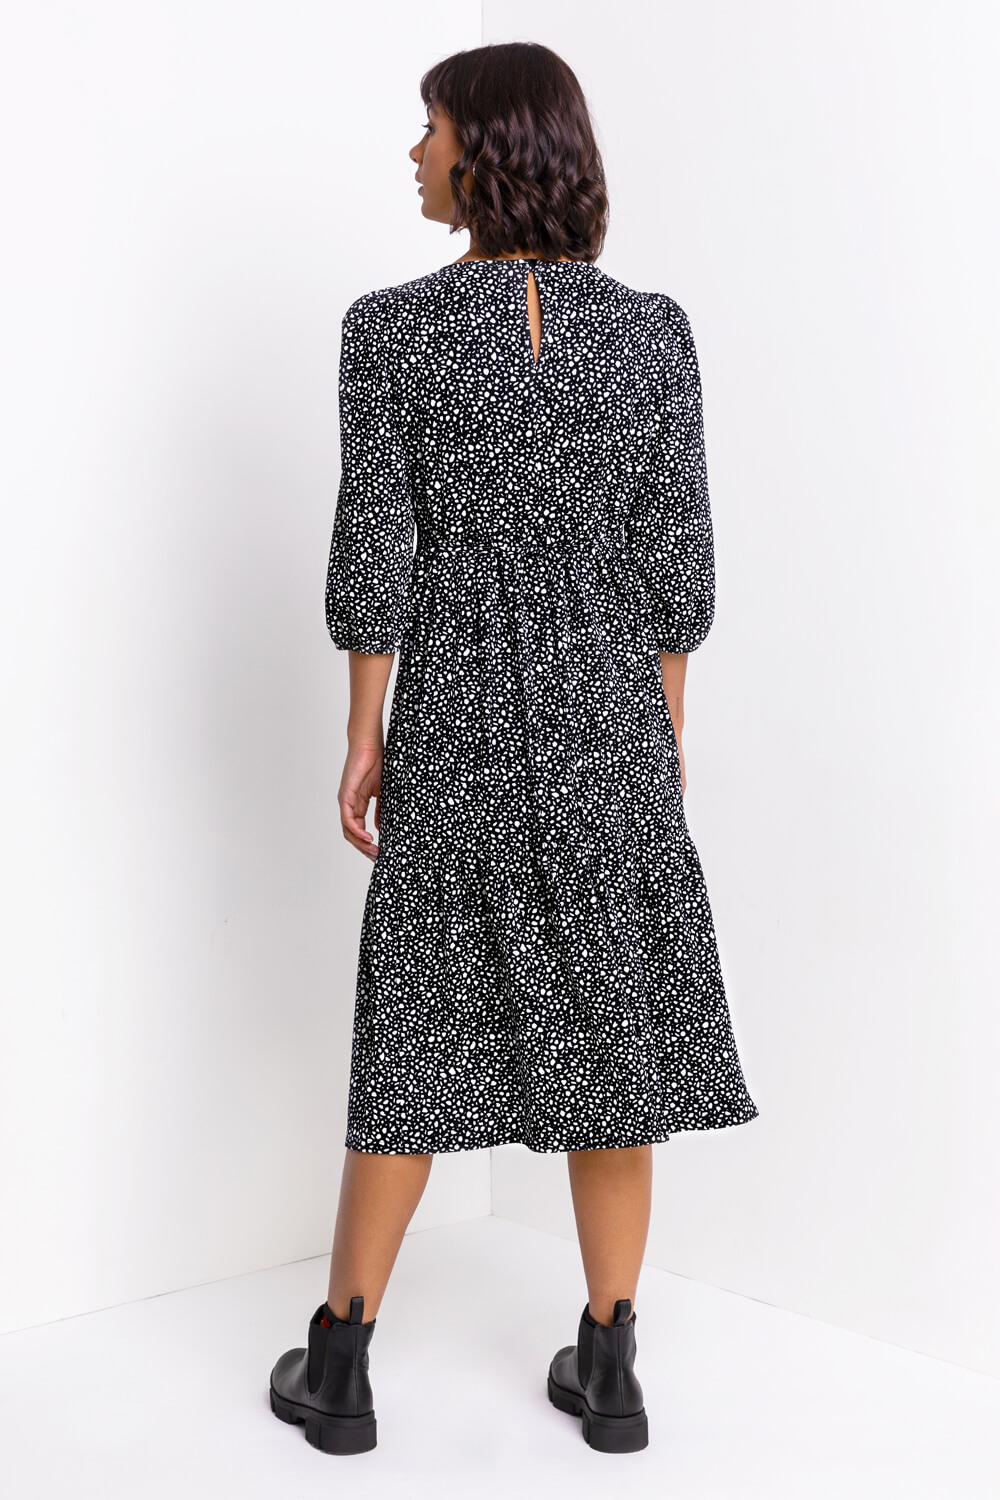 Black Tiered Spot Print Midi Dress, Image 2 of 4